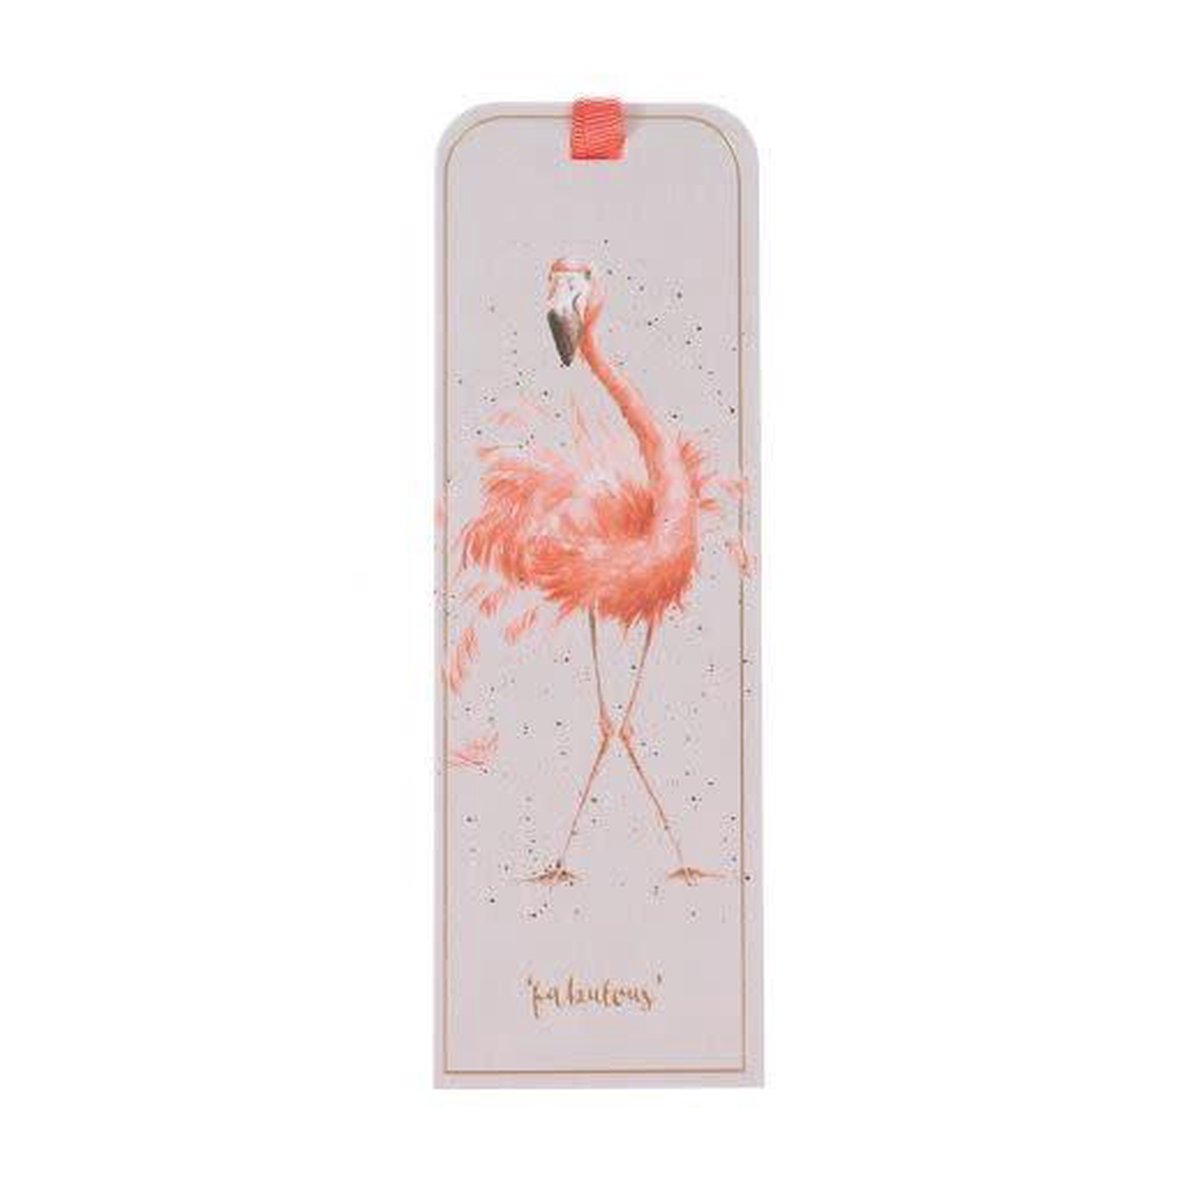 Wrendale Bladwijzer - Flamingo